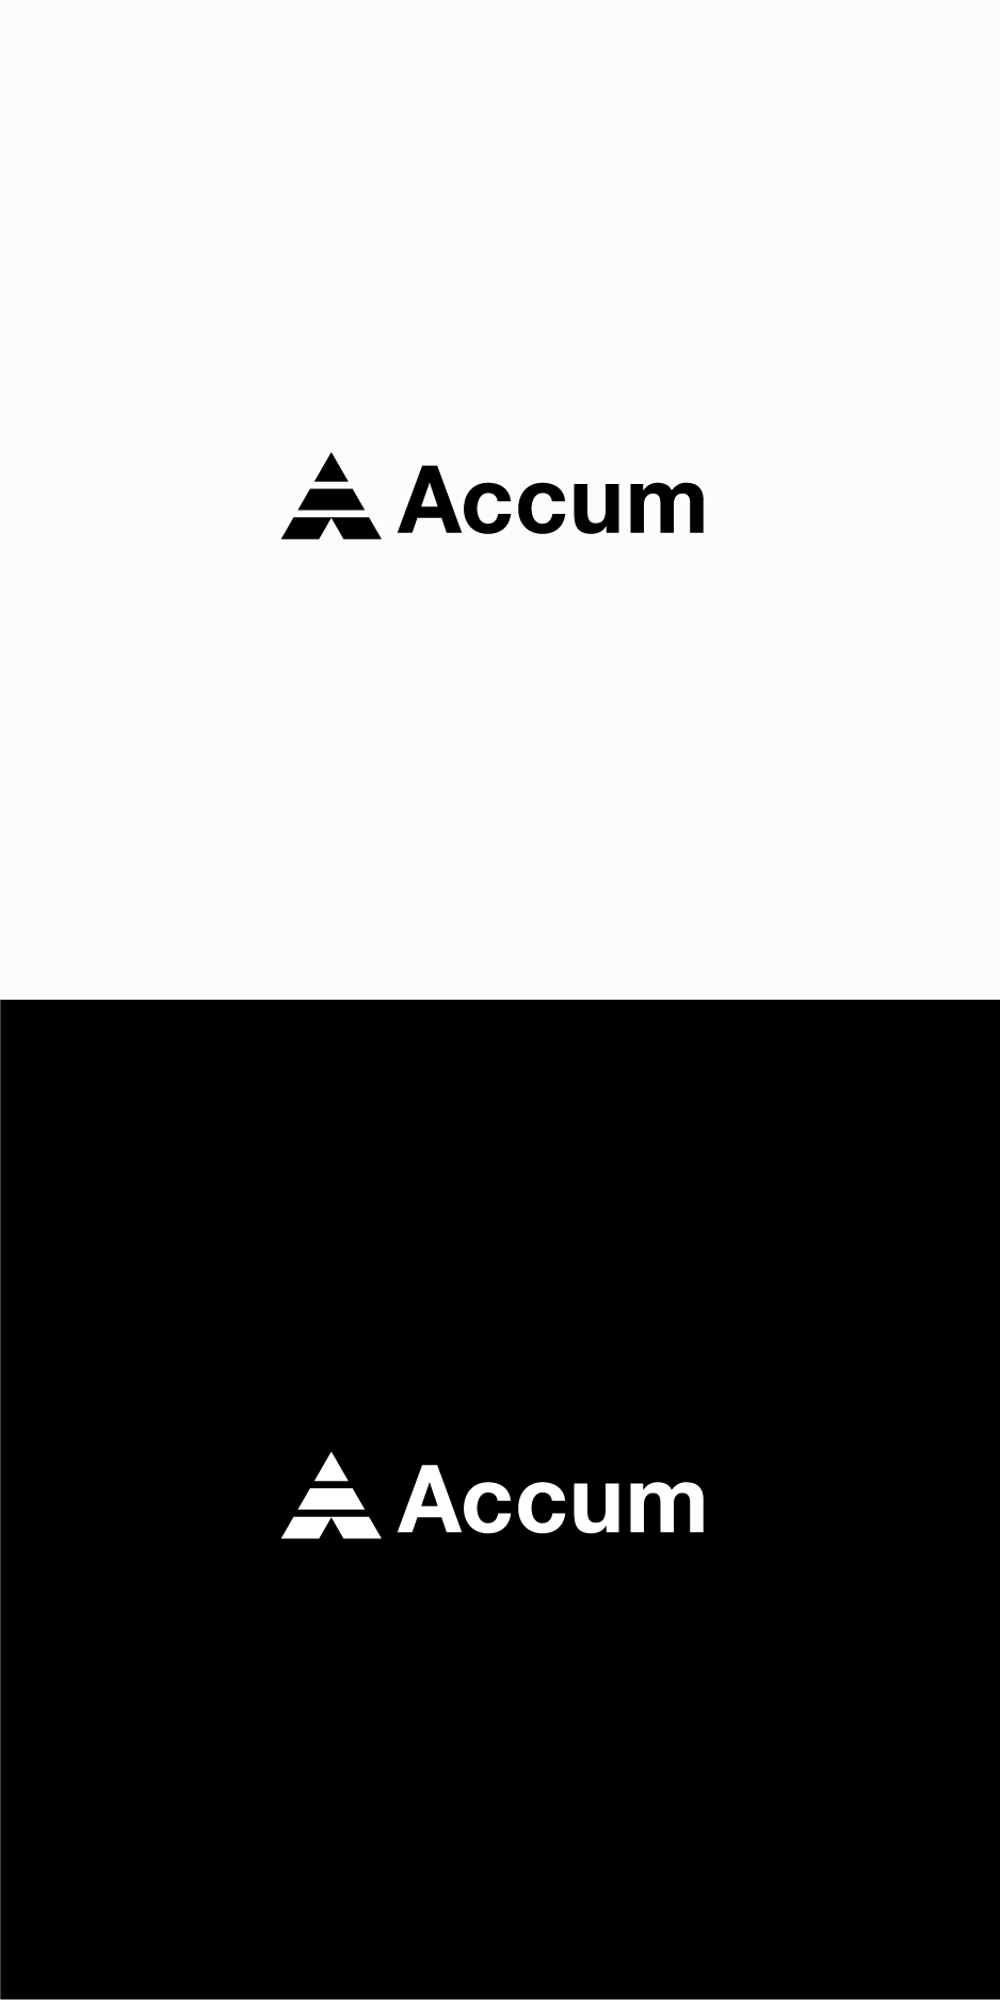 トレーニングジム/オンラインアカデミー「Accum」のロゴ